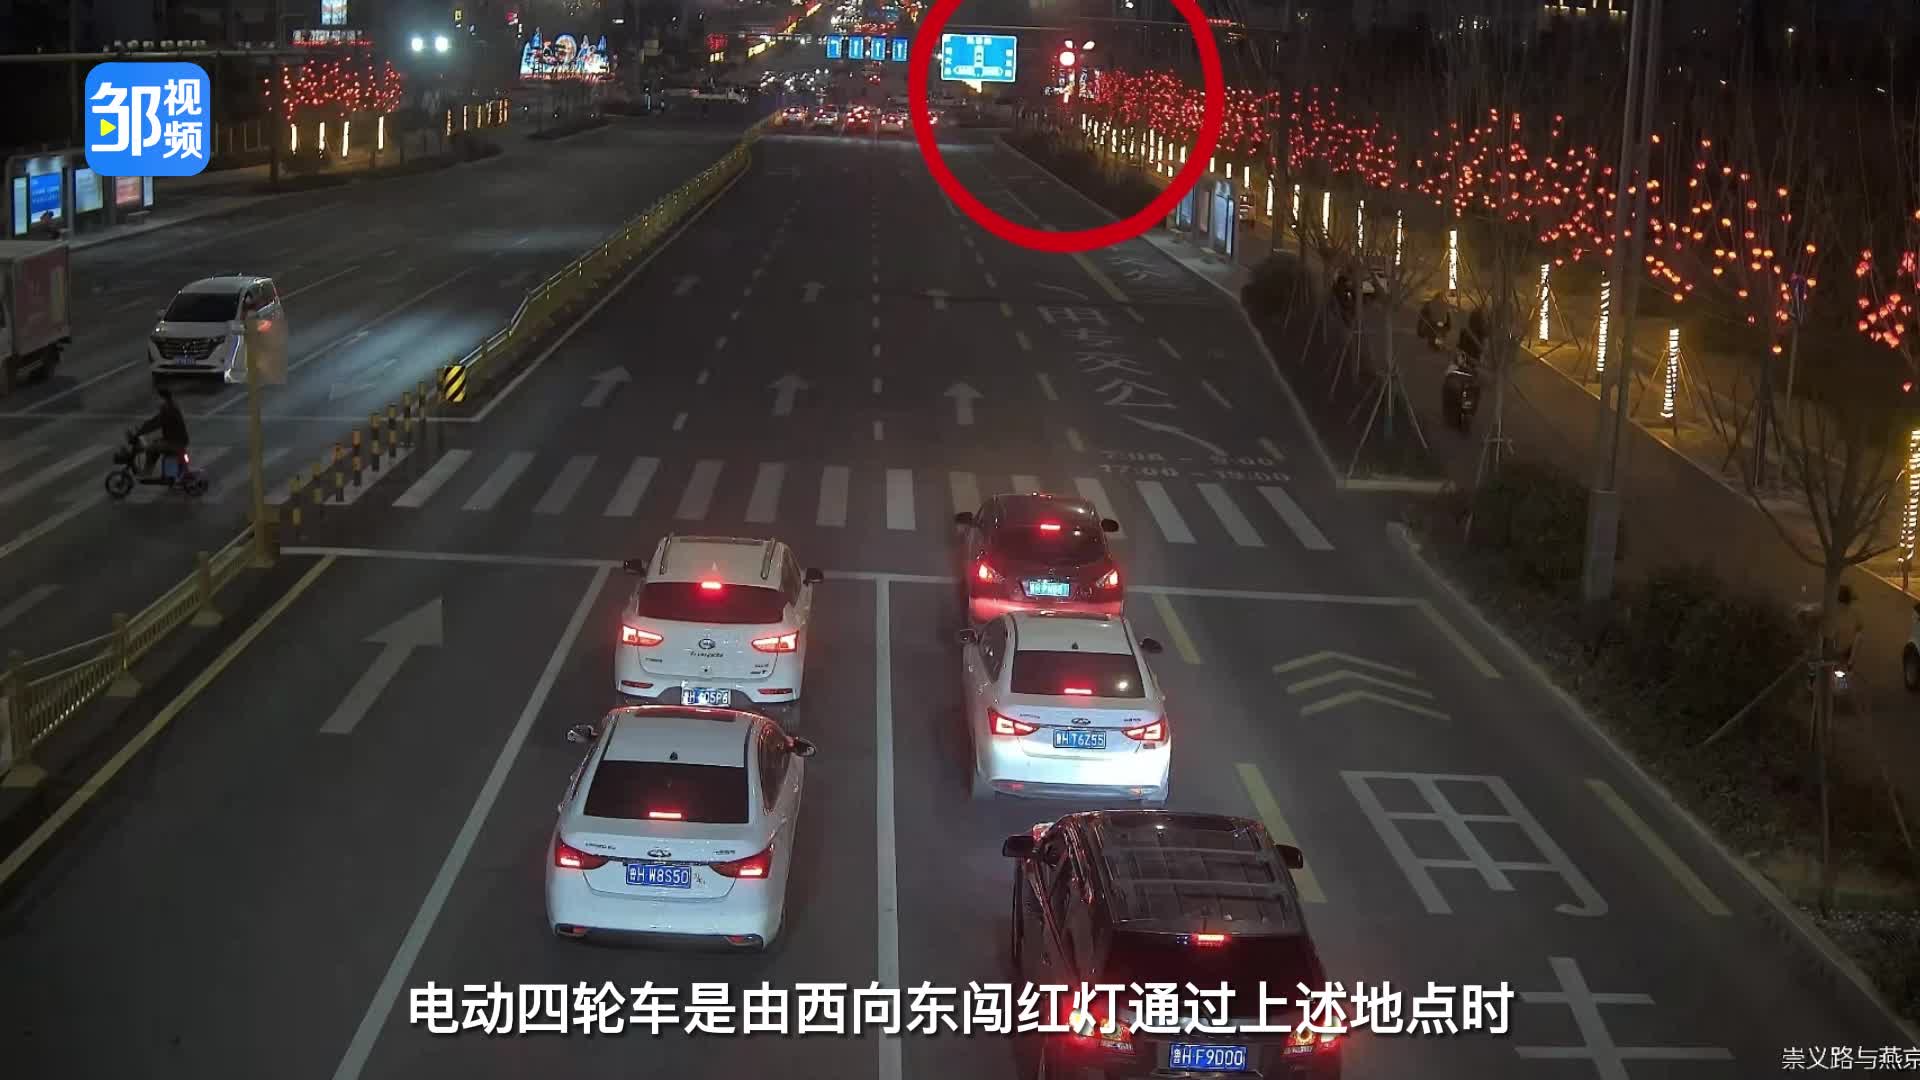 【邹视频·新闻】54秒 | 小车闯红灯 事故负全责